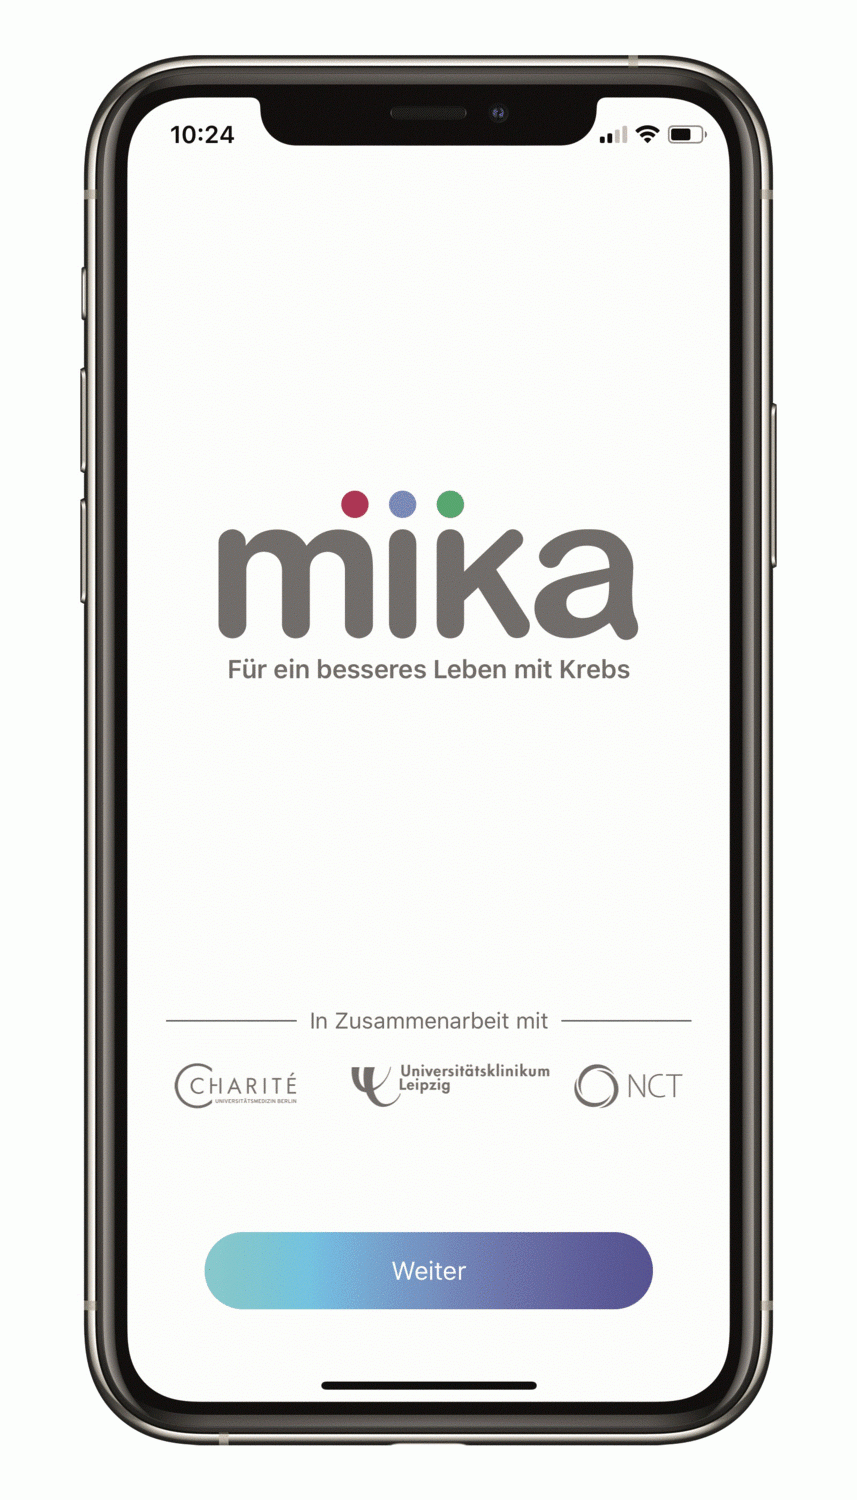 Ein modernes digitales Medizinprodukt als kleiner Helfer in der Tasche: Die MIKA-App, der von UKL und Charité mitentwickelte Krebs-Therapieassistent als Smartphone-App, ist nun auch als speziell für das UCCL entwickelte Version erhältlich.